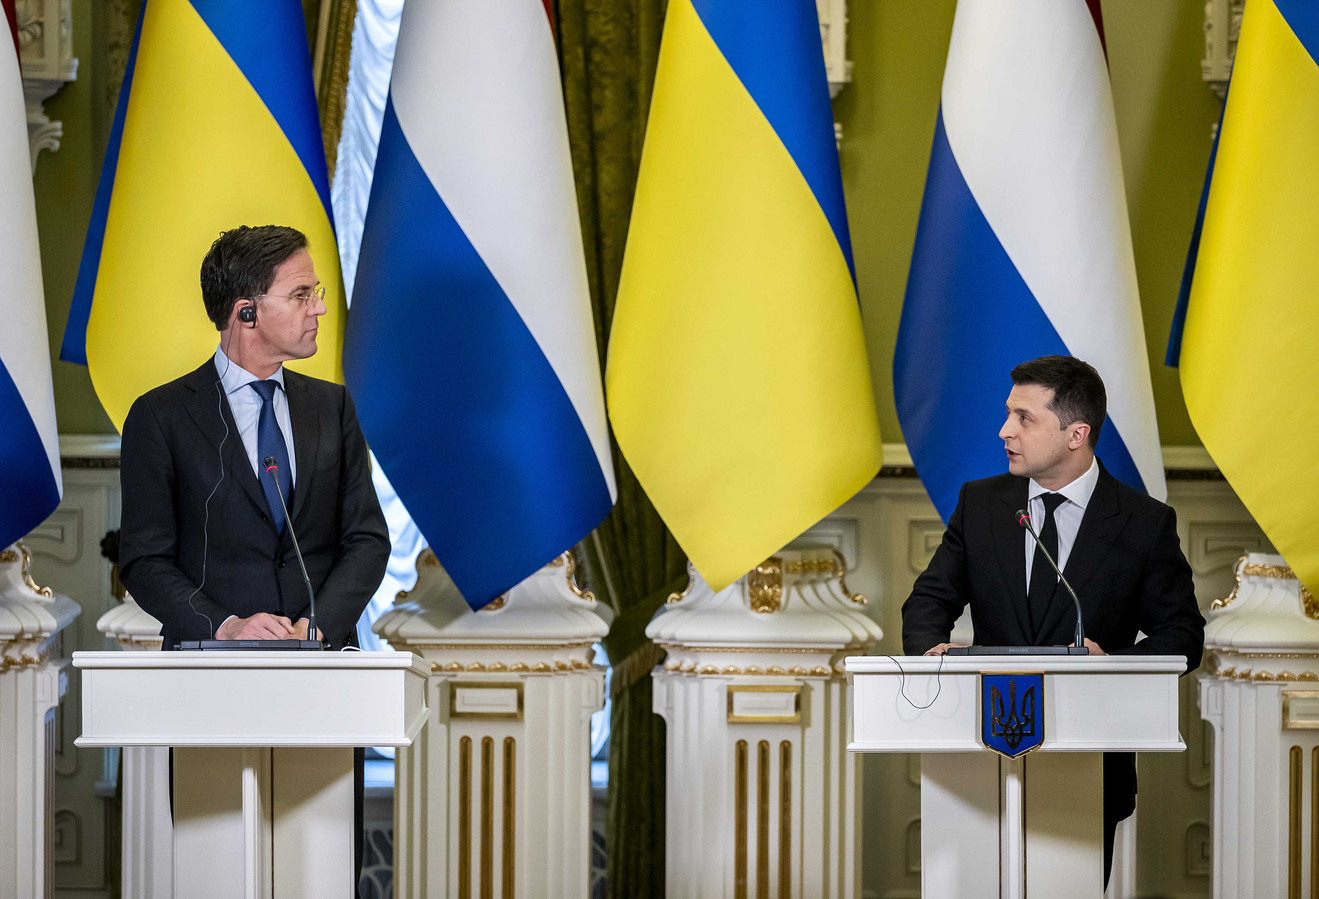 Premier Mark Rutte had op 2 februari een ontmoeting met president Volodimir Zelenski in Kiev. Het bezoek vond plaats voor de inval van Rusland in Oekraïne.